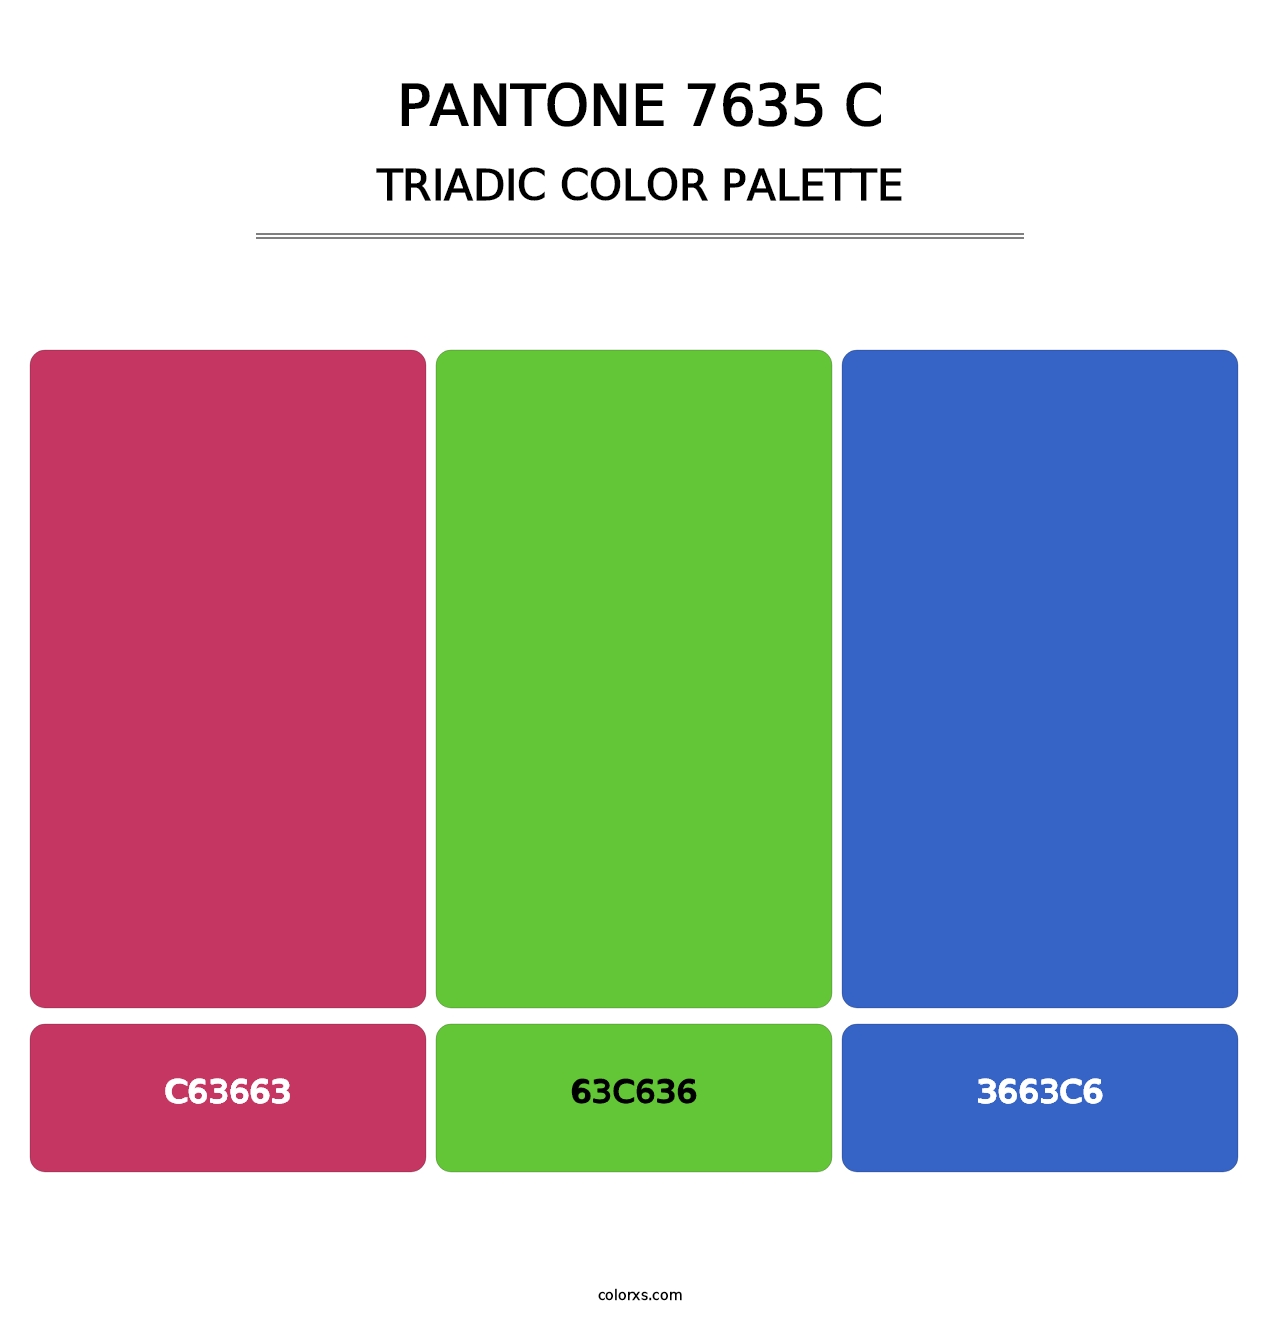 PANTONE 7635 C - Triadic Color Palette